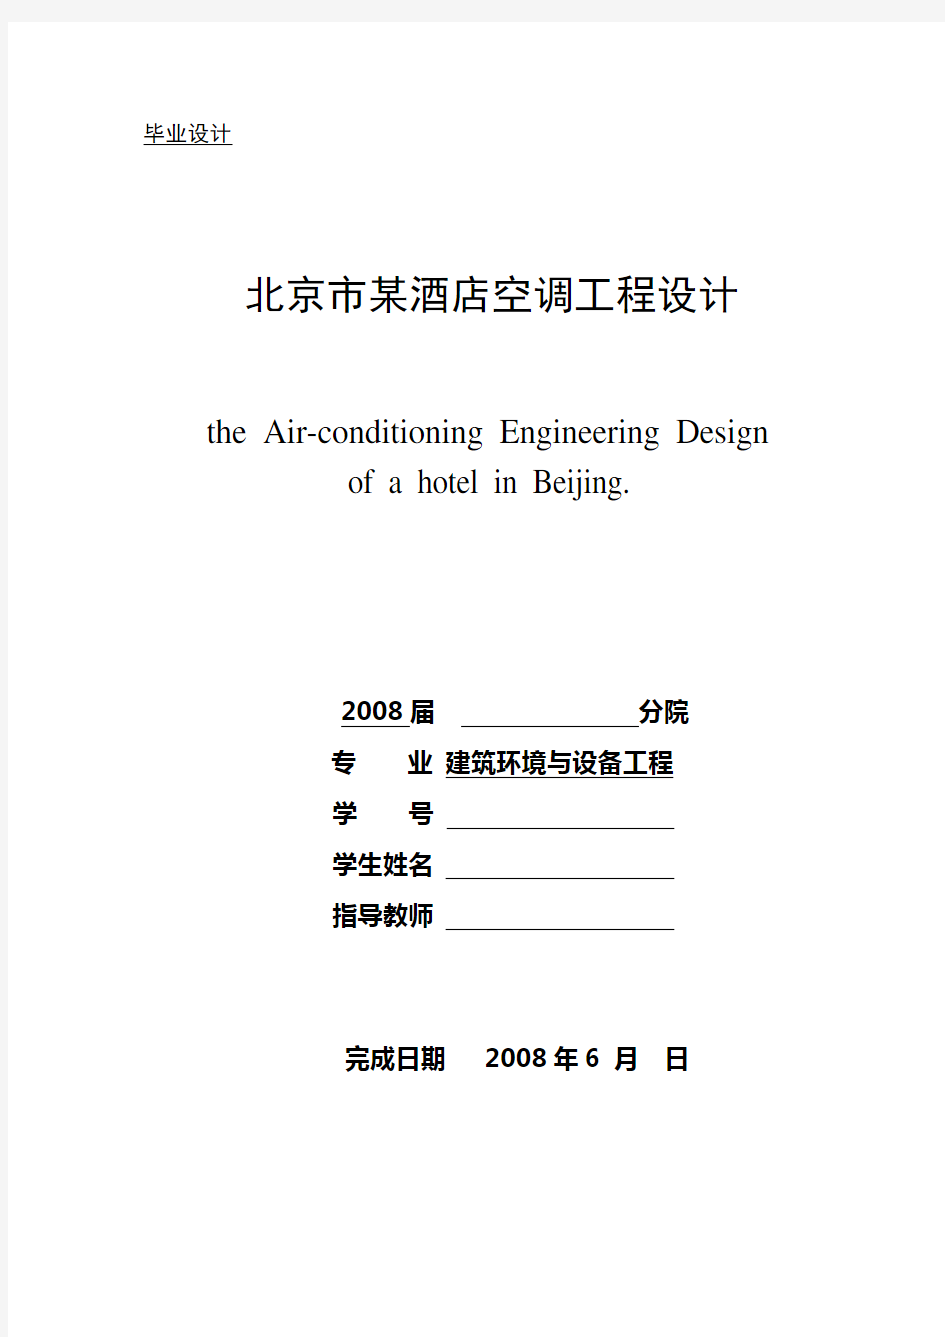 北京市某酒店空调工程设计-毕业设计